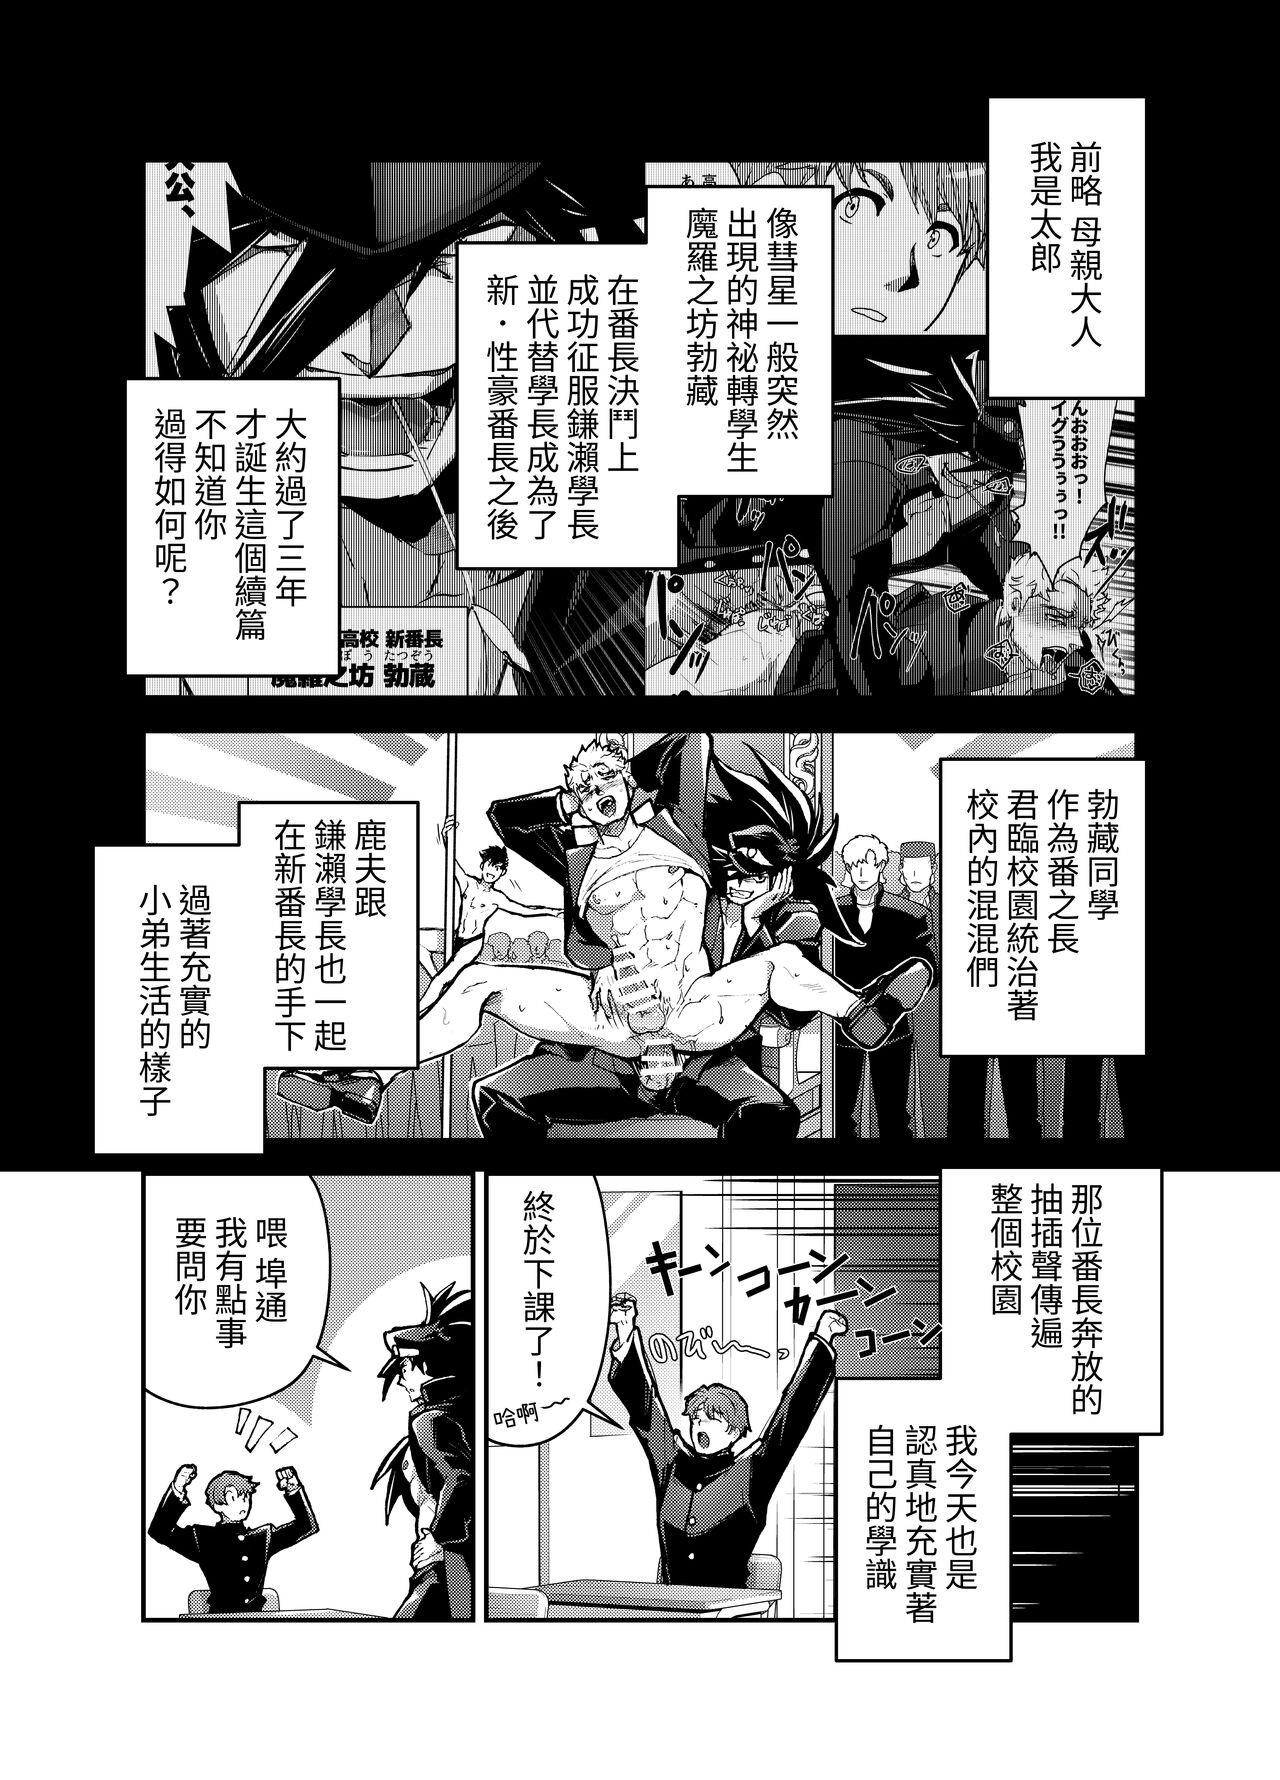 Itokazu ITKZ Sei i Daishougun 性威大将軍 Banchou★Monogatari 番長★物語 2